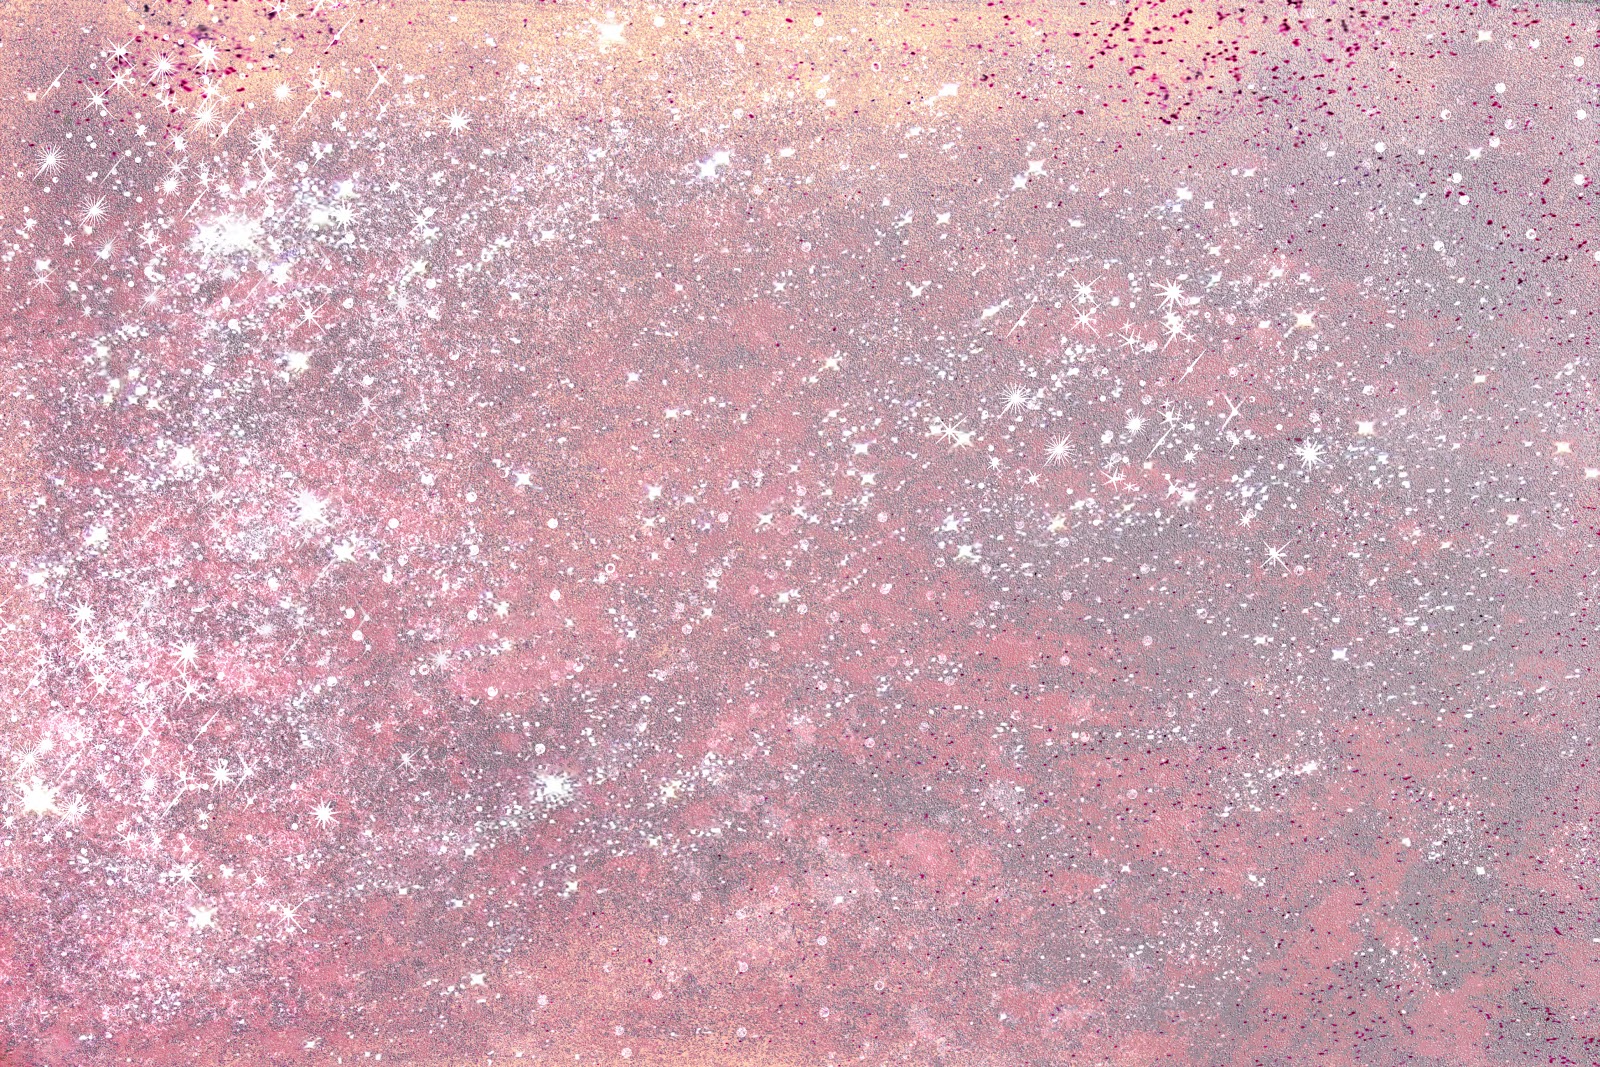 Sparkly Pink Background Doblelol